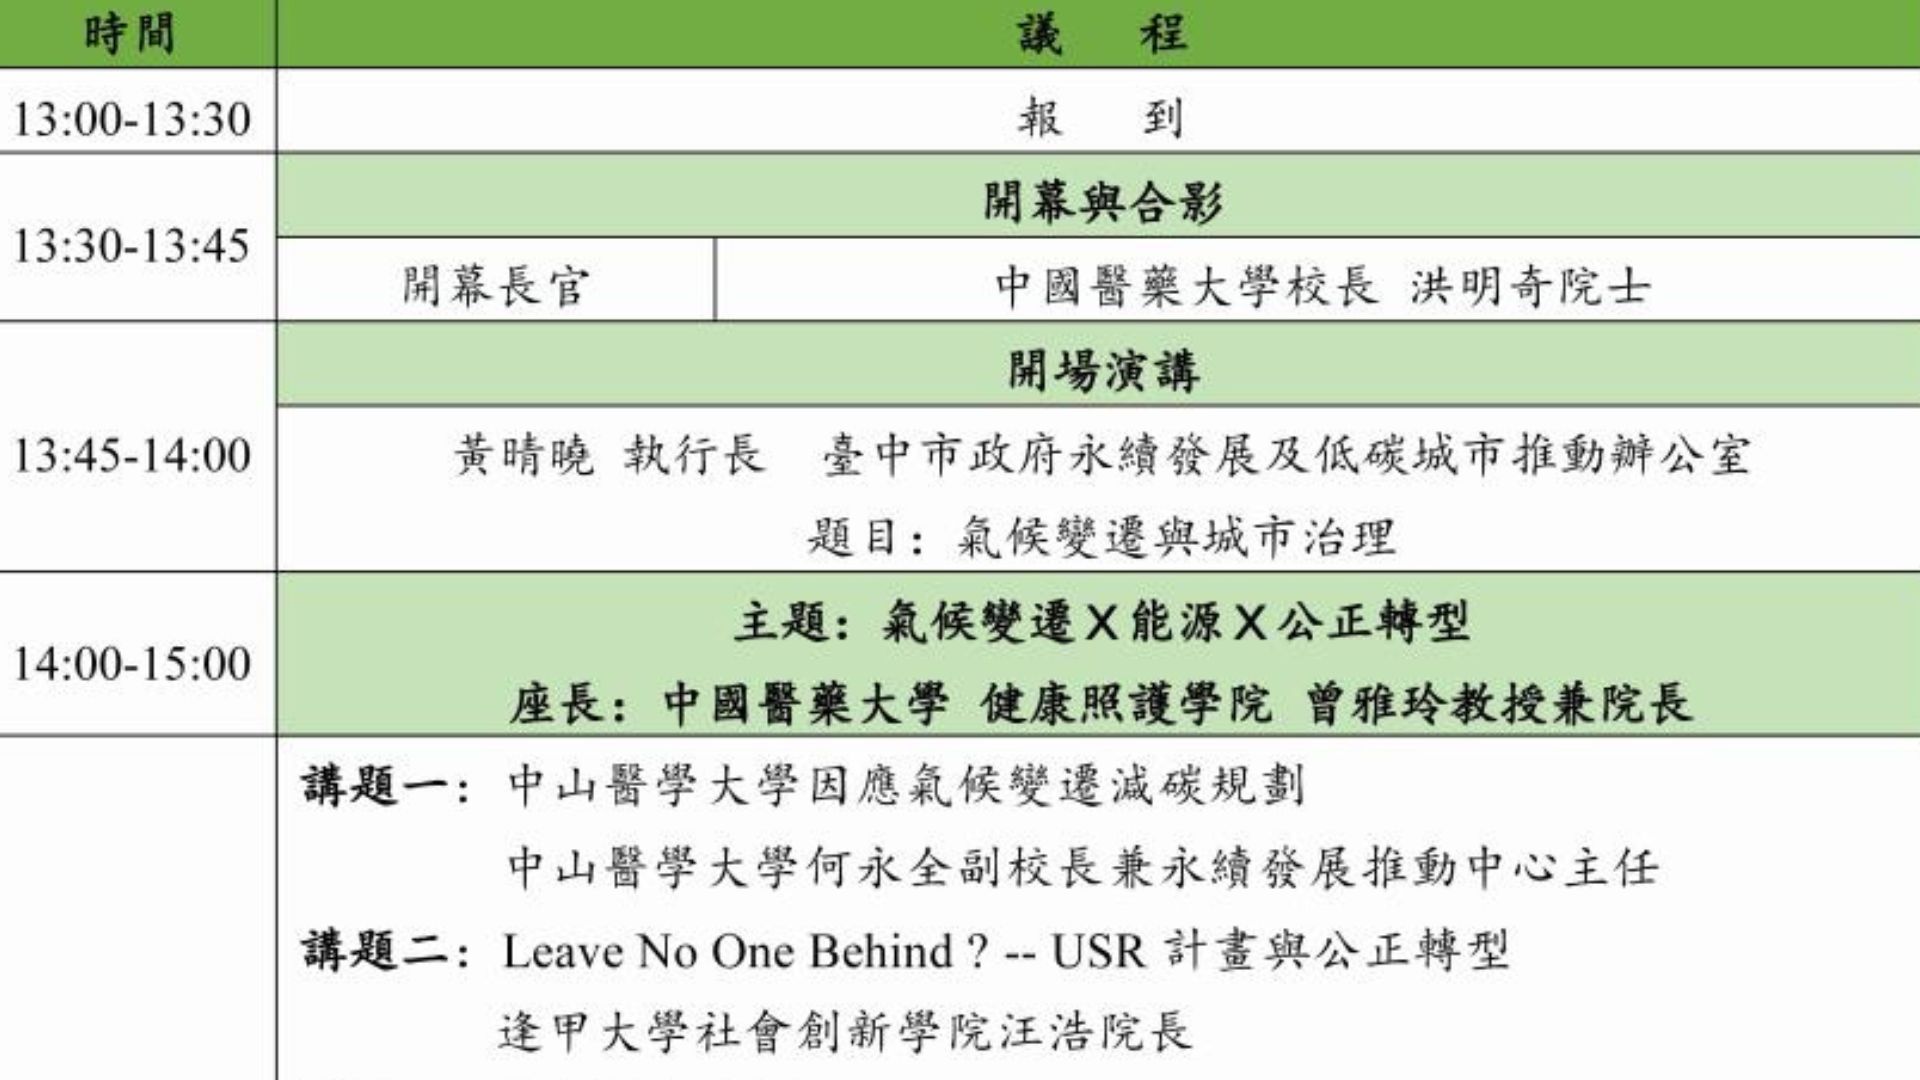 【校外論壇活動】中國醫藥大學於113/04/25辦理《氣候變遷與大學社會責任論壇》